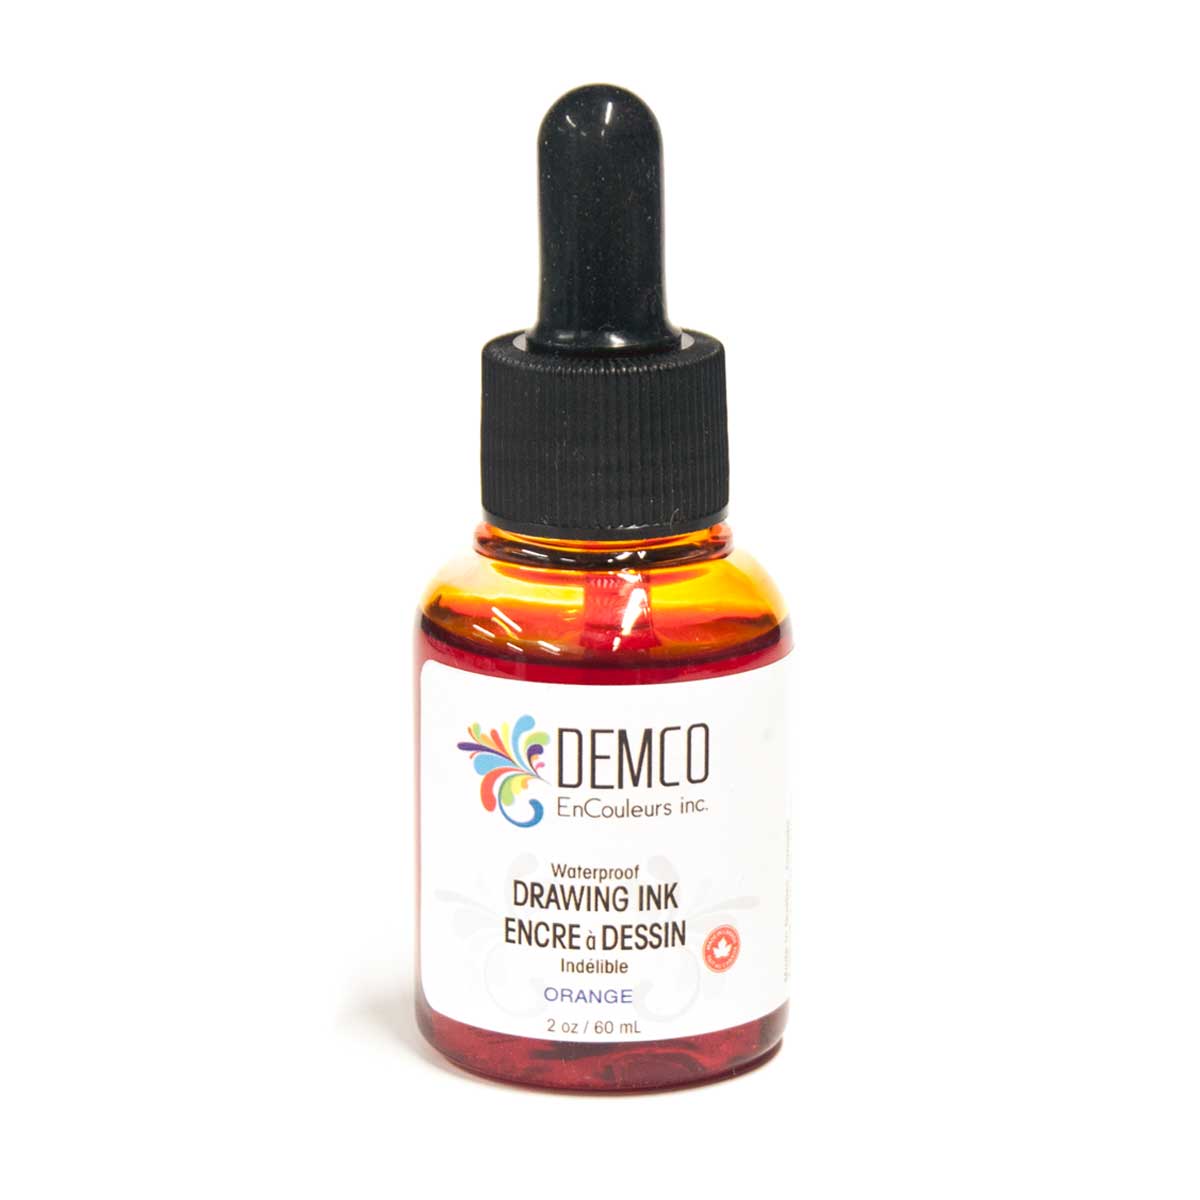 Demco Waterproof Drawing Ink Orange 60 ml